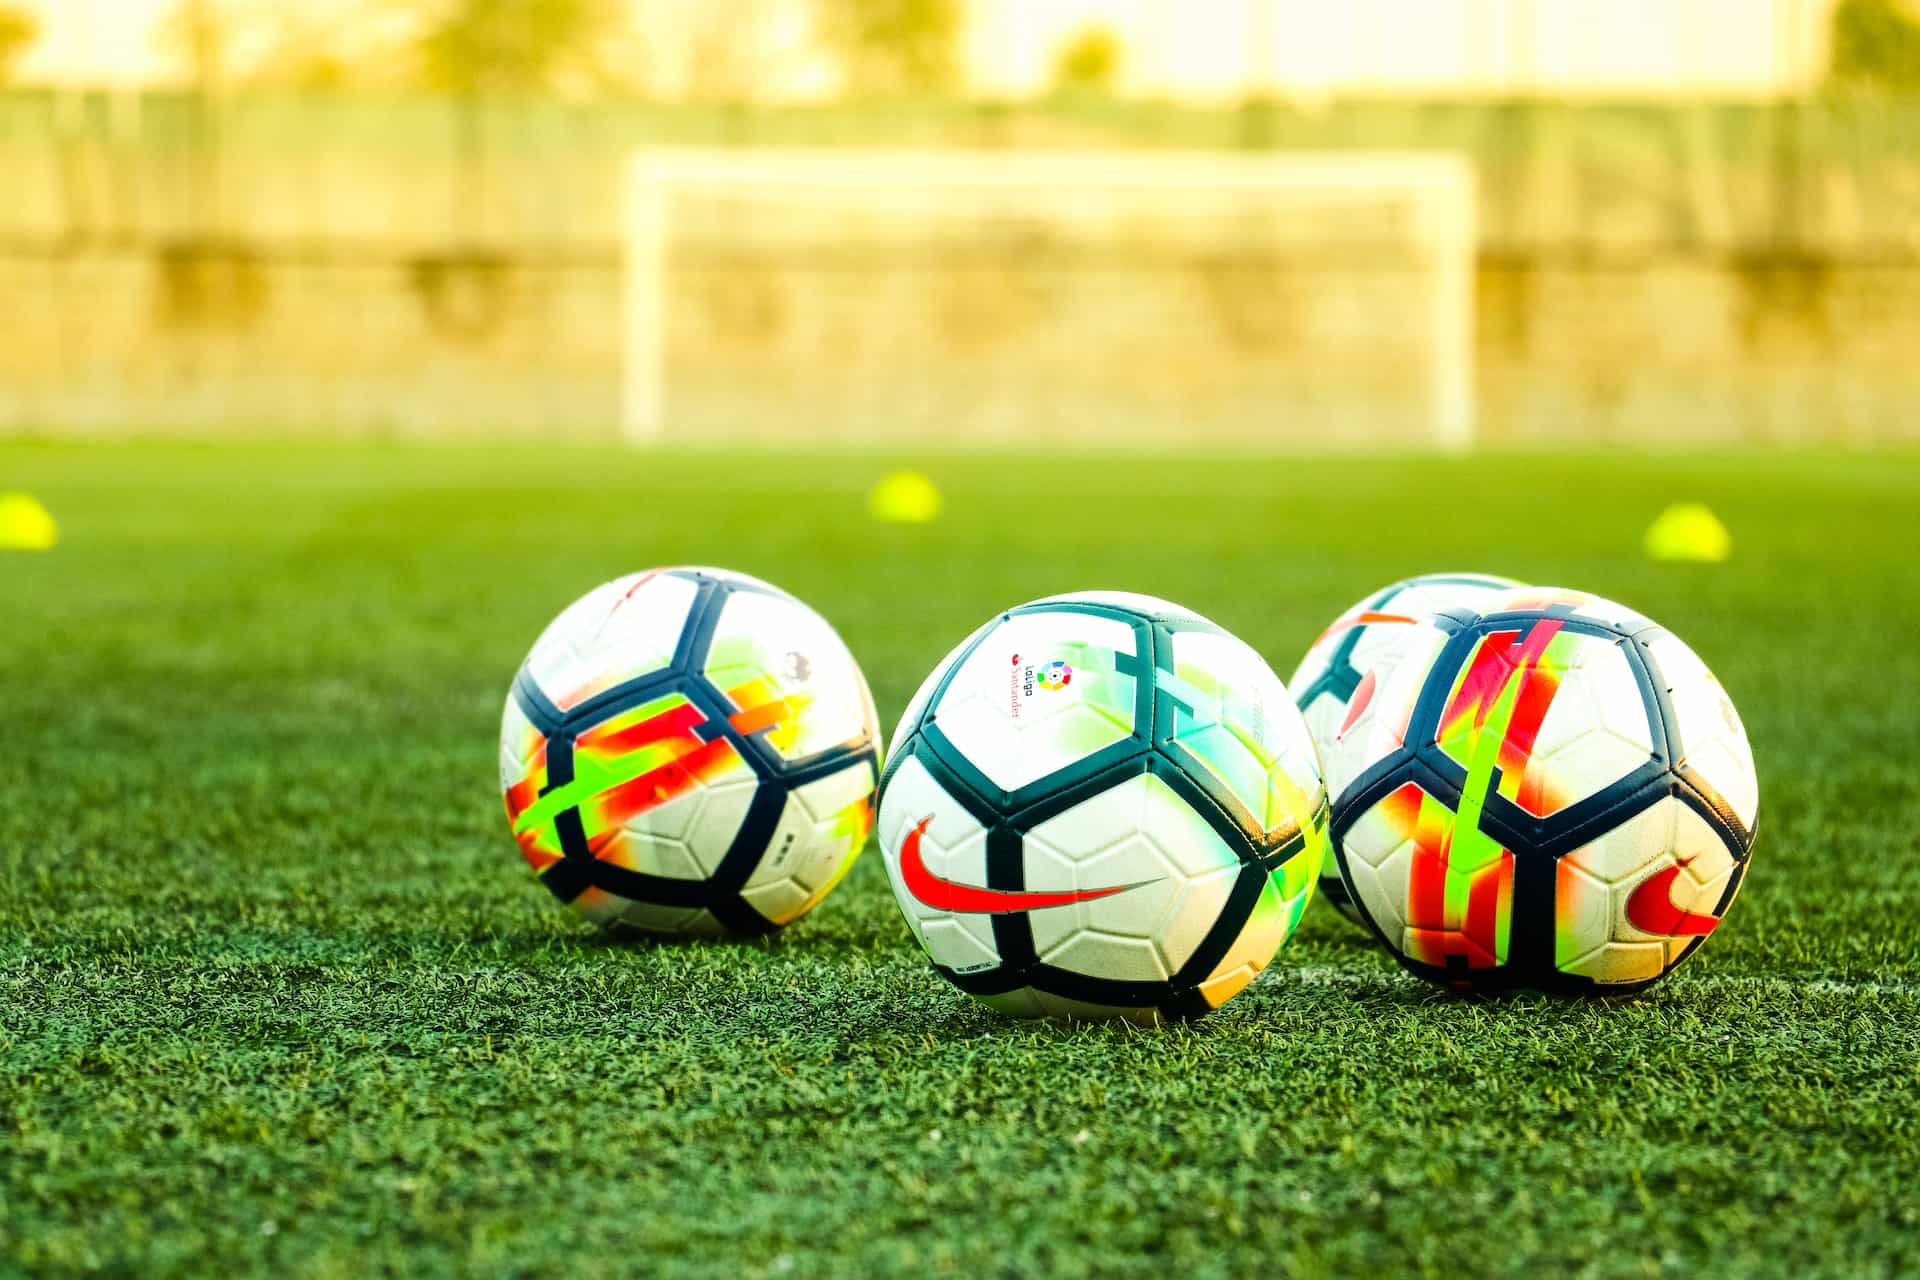 Three soccer balls sit on a field.